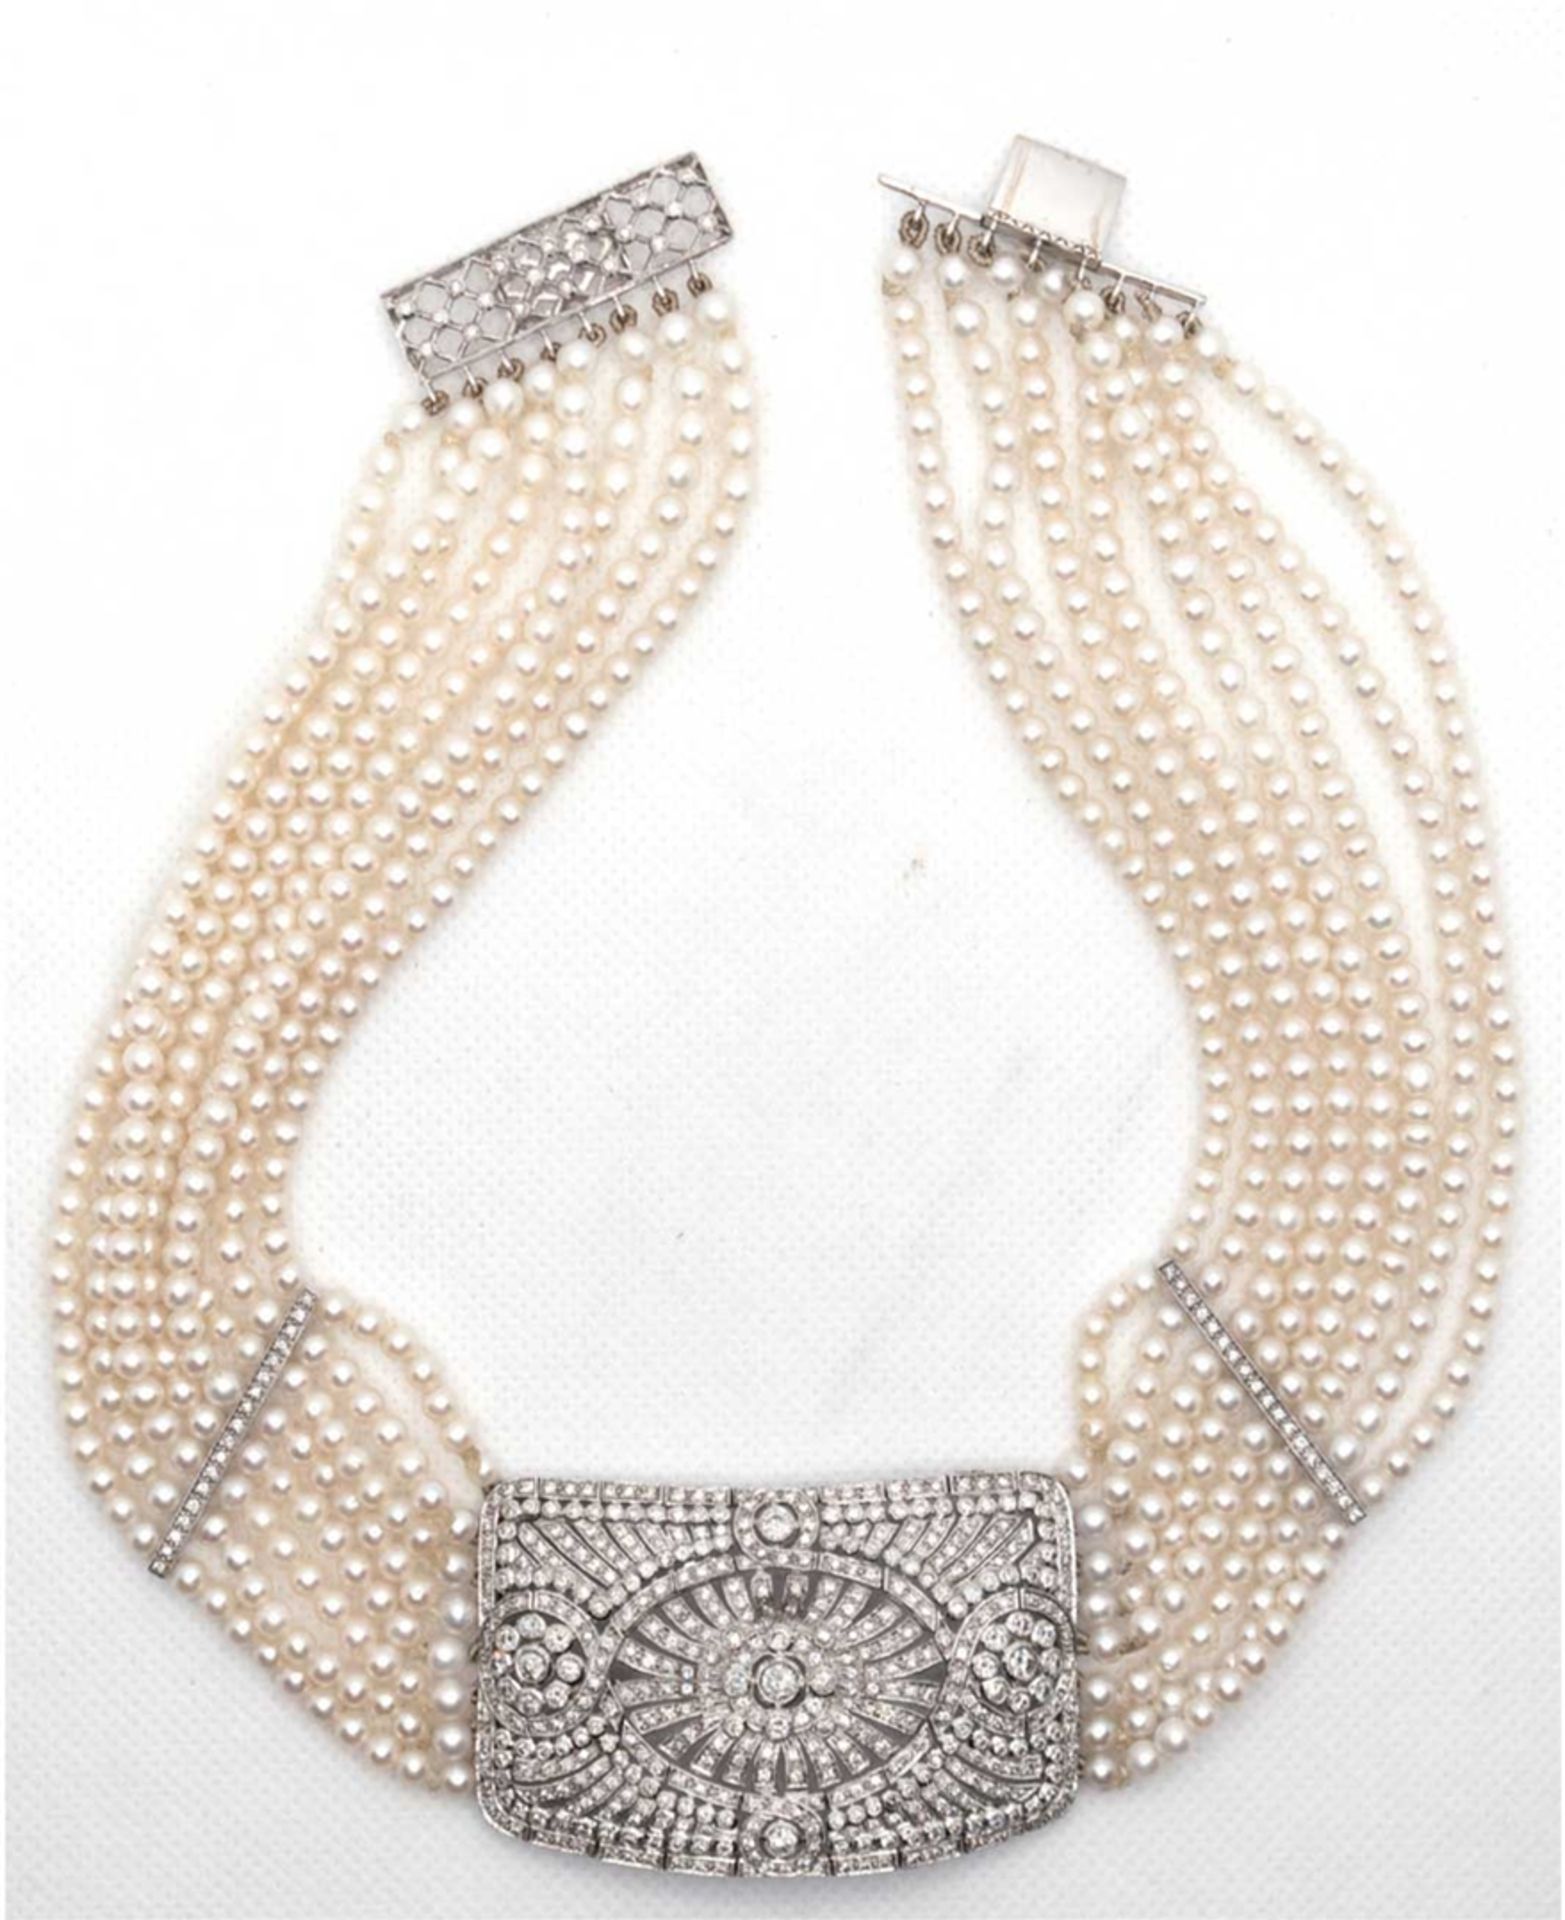 8-reihiges Perlenhalsband, 750er WG, ca. 89 g, Mittelteil, Zwischenstege und Schließe mit Brillantb